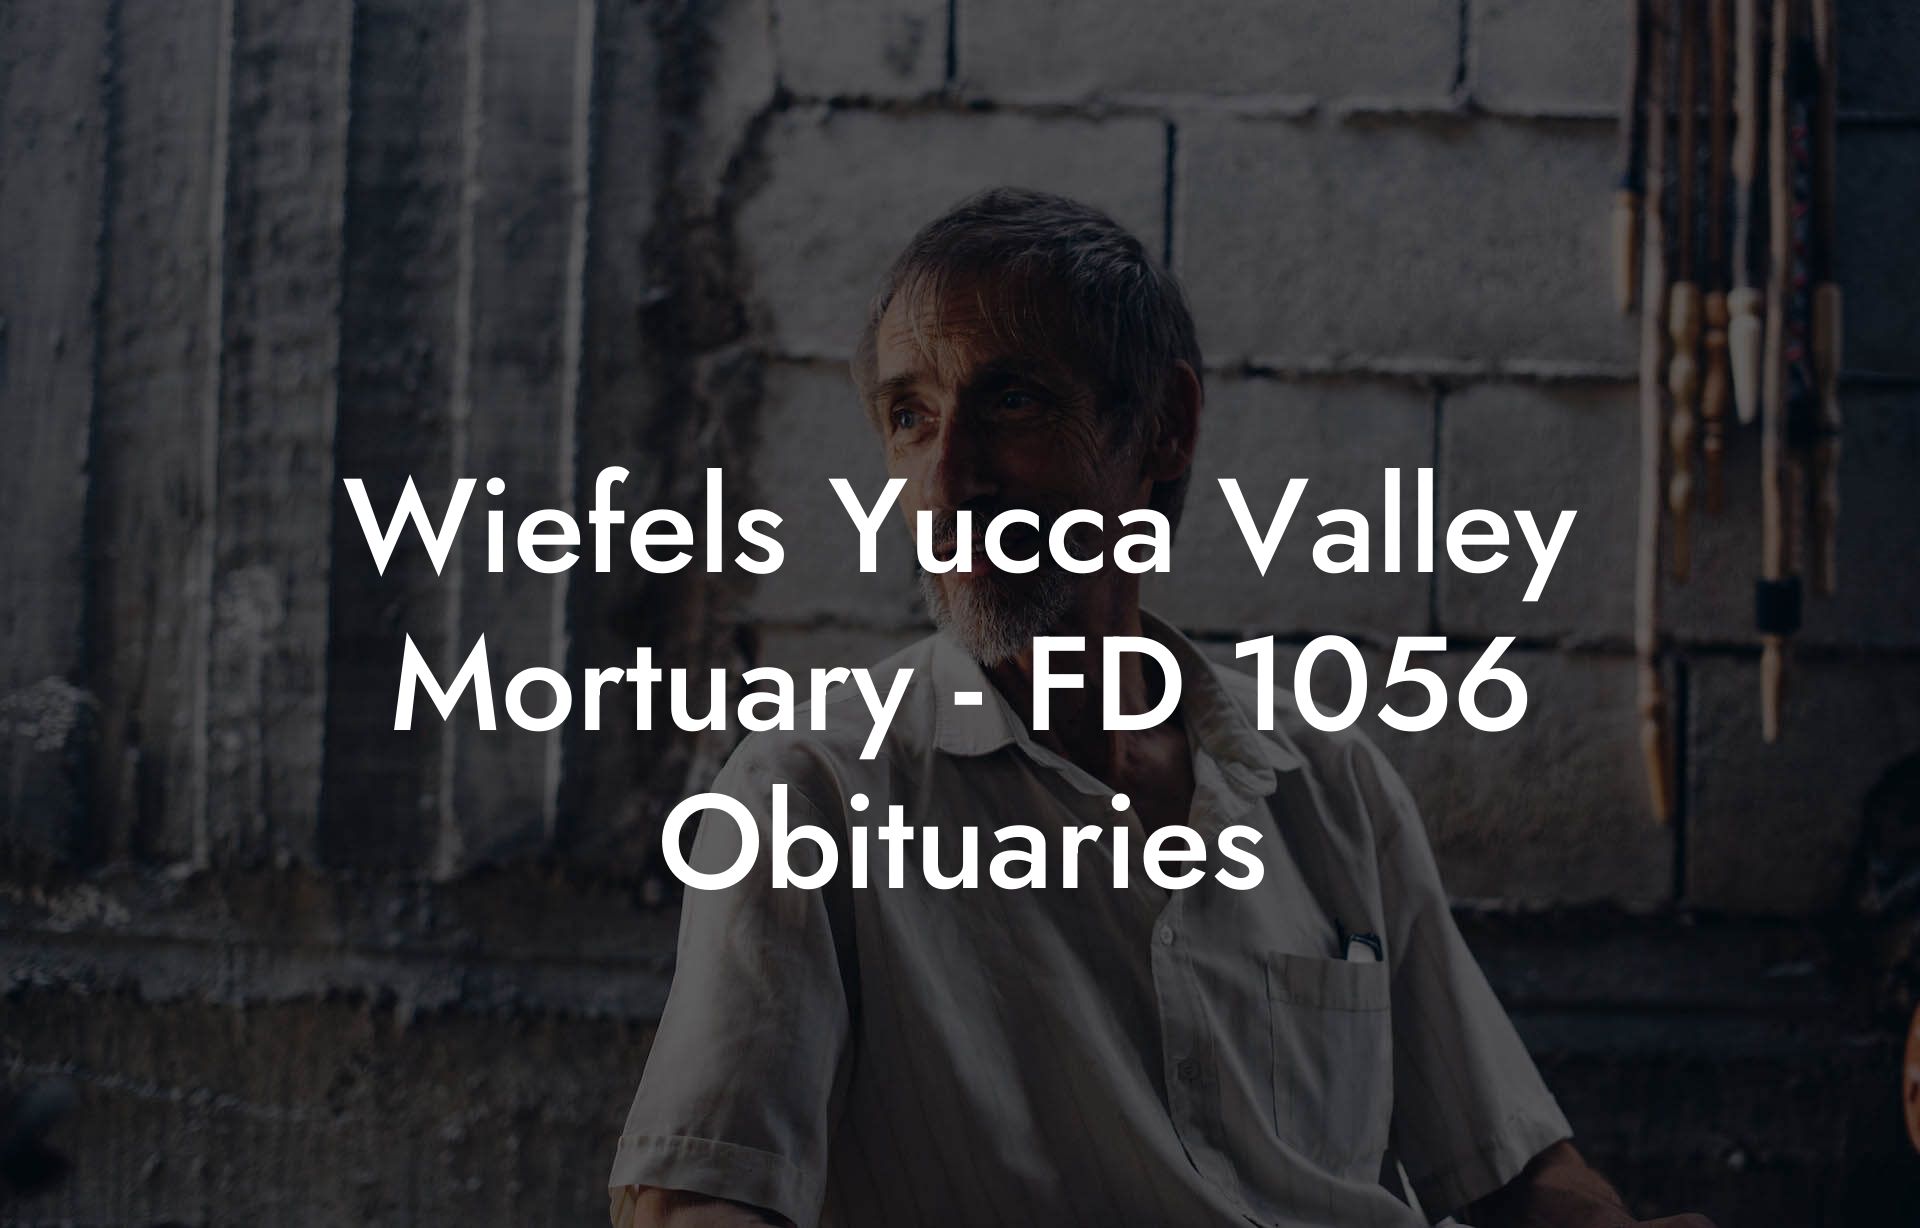 Wiefels Yucca Valley Mortuary - FD 1056 Obituaries